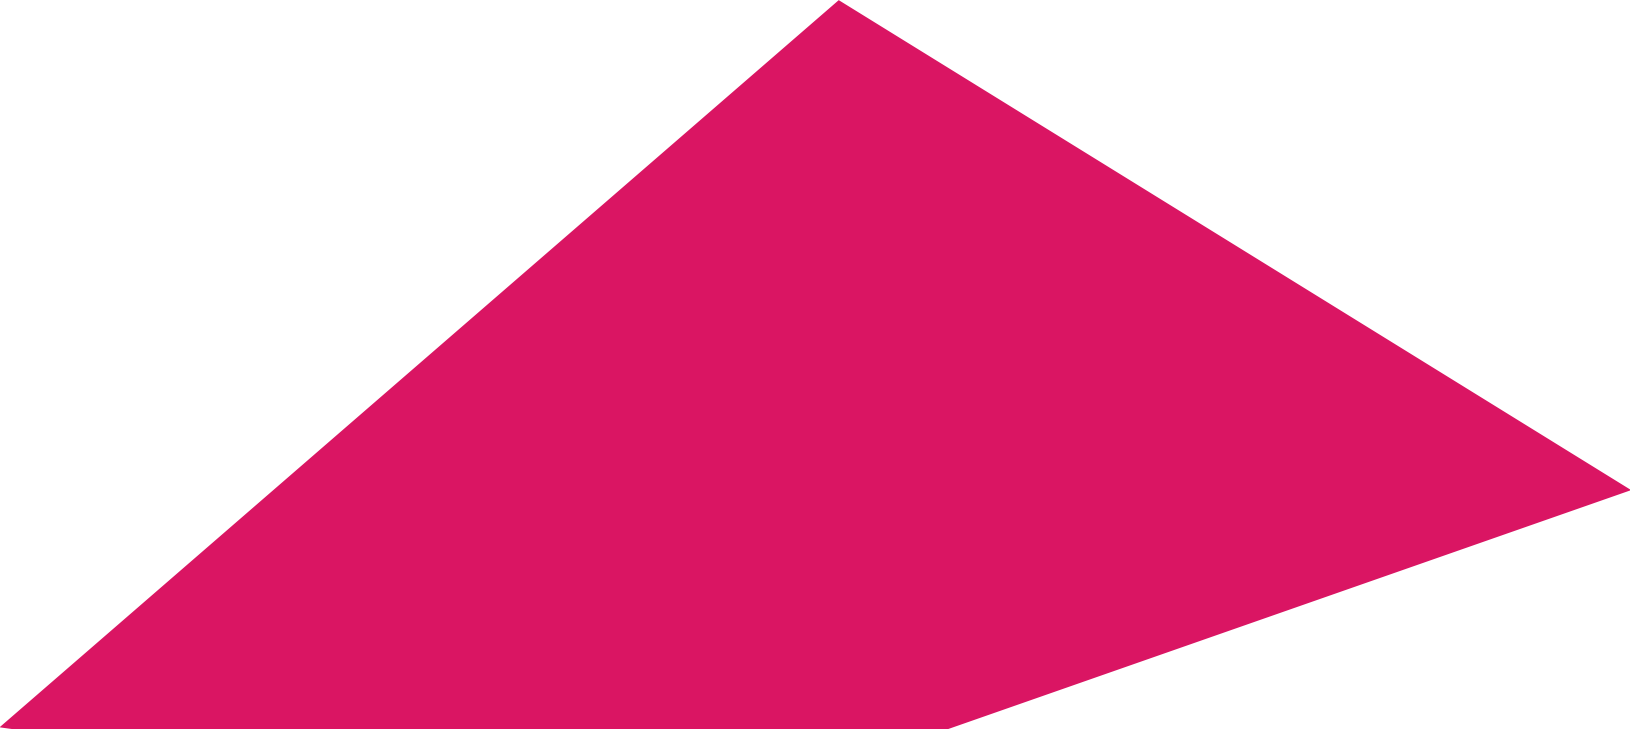 triangulo rosa